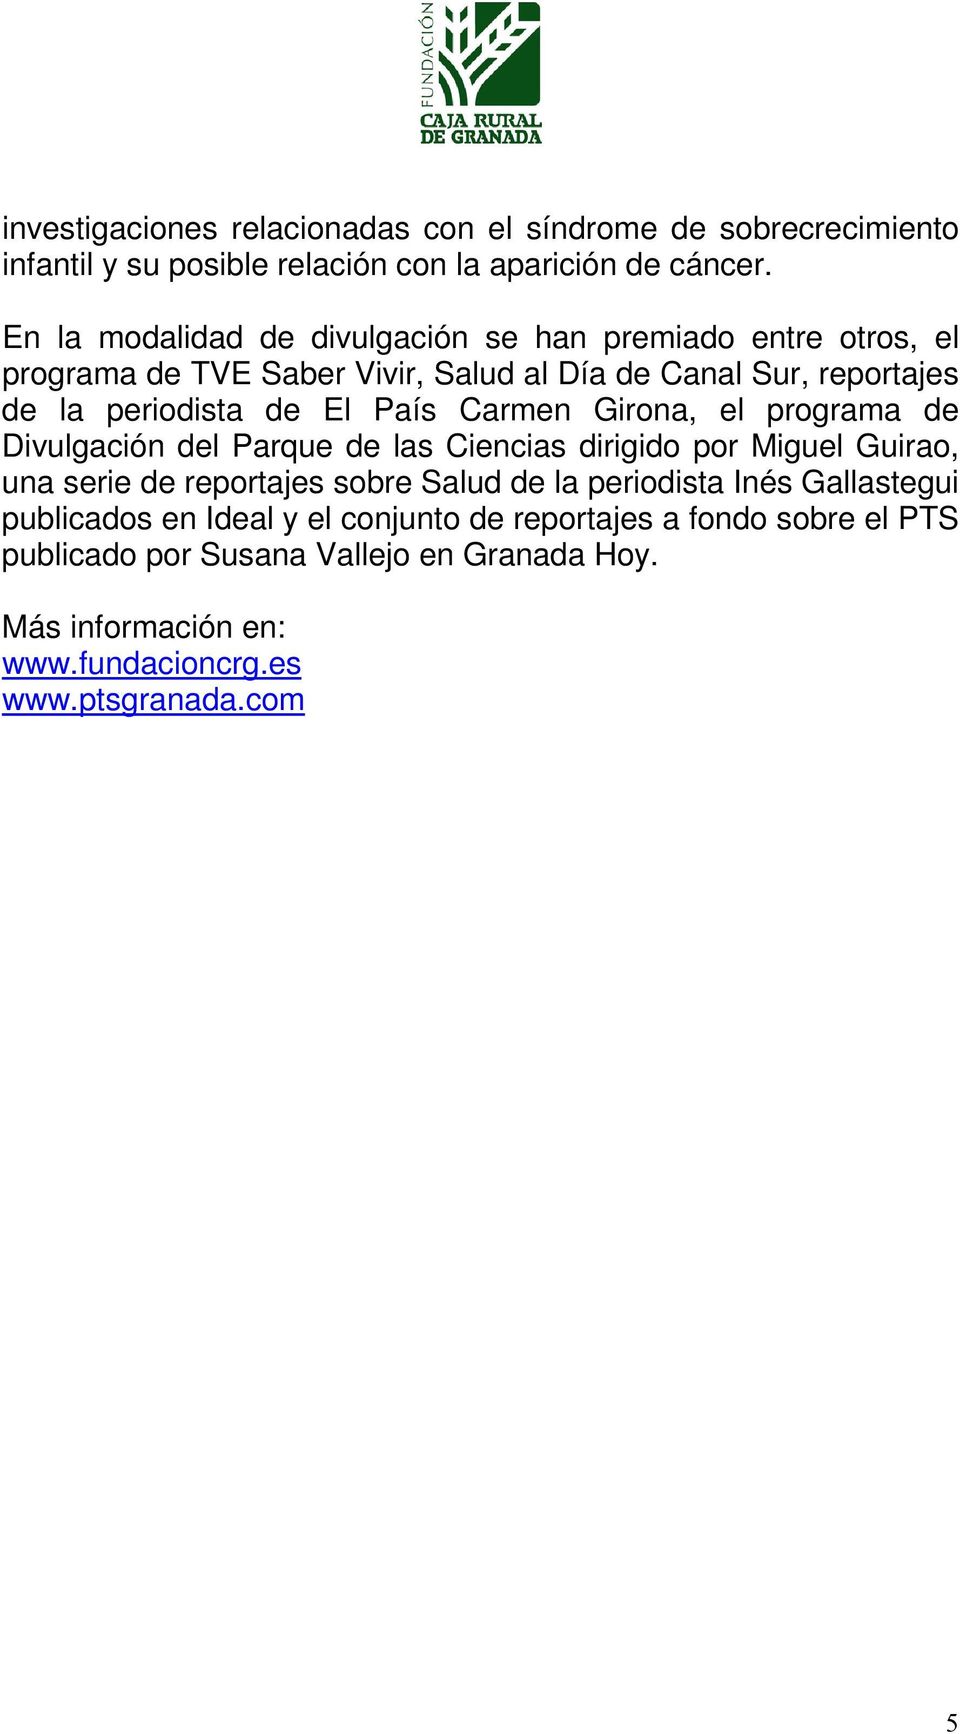 País Carmen Girona, el programa de Divulgación del Parque de las Ciencias dirigido por Miguel Guirao, una serie de reportajes sobre Salud de la periodista